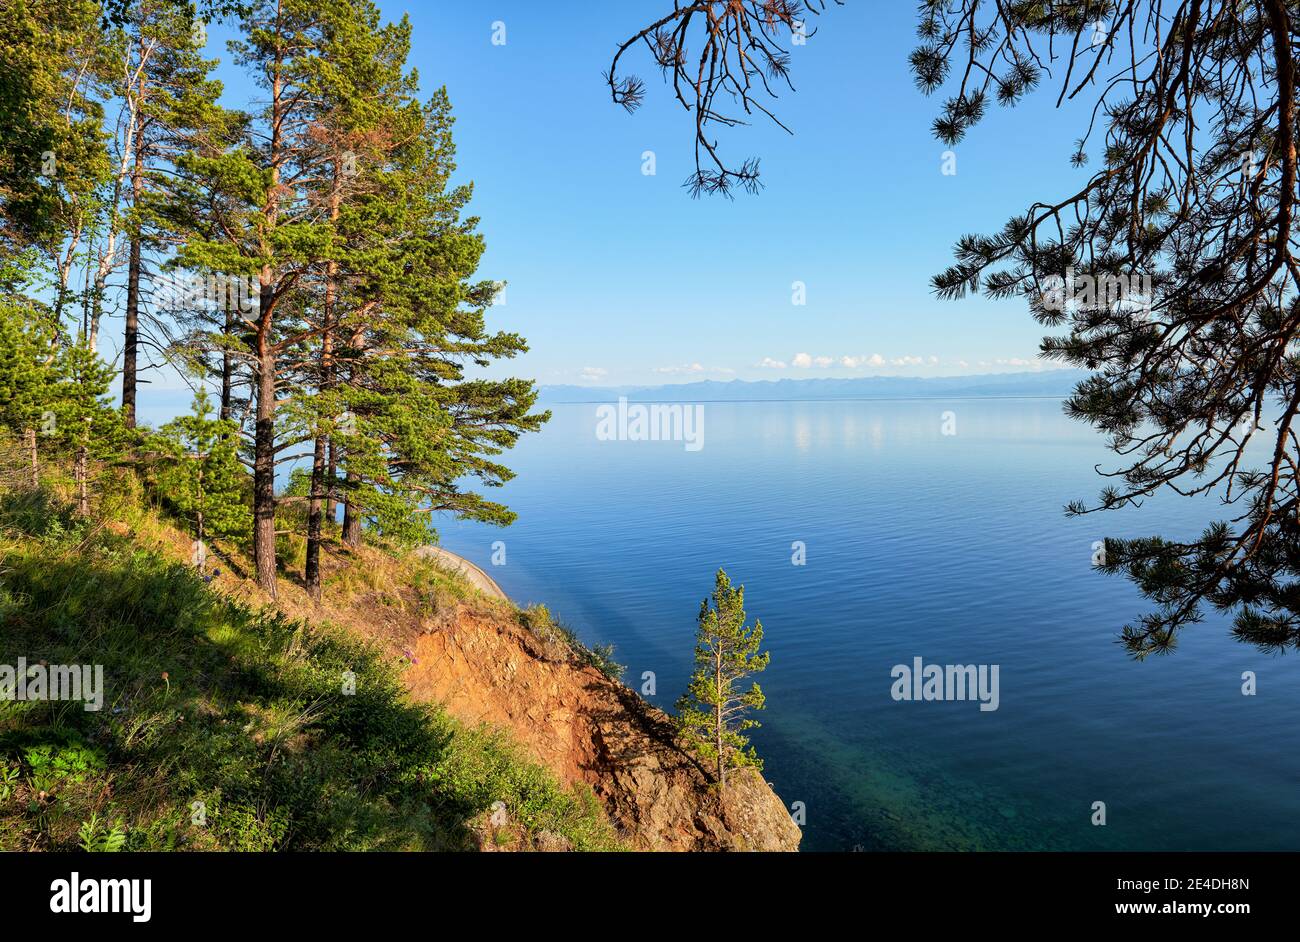 Vue sur le lac Baikal depuis la rive boisée. Au loin, les montagnes Hamar-Daban sont en arrière-plan. Région d'Irkoutsk Banque D'Images